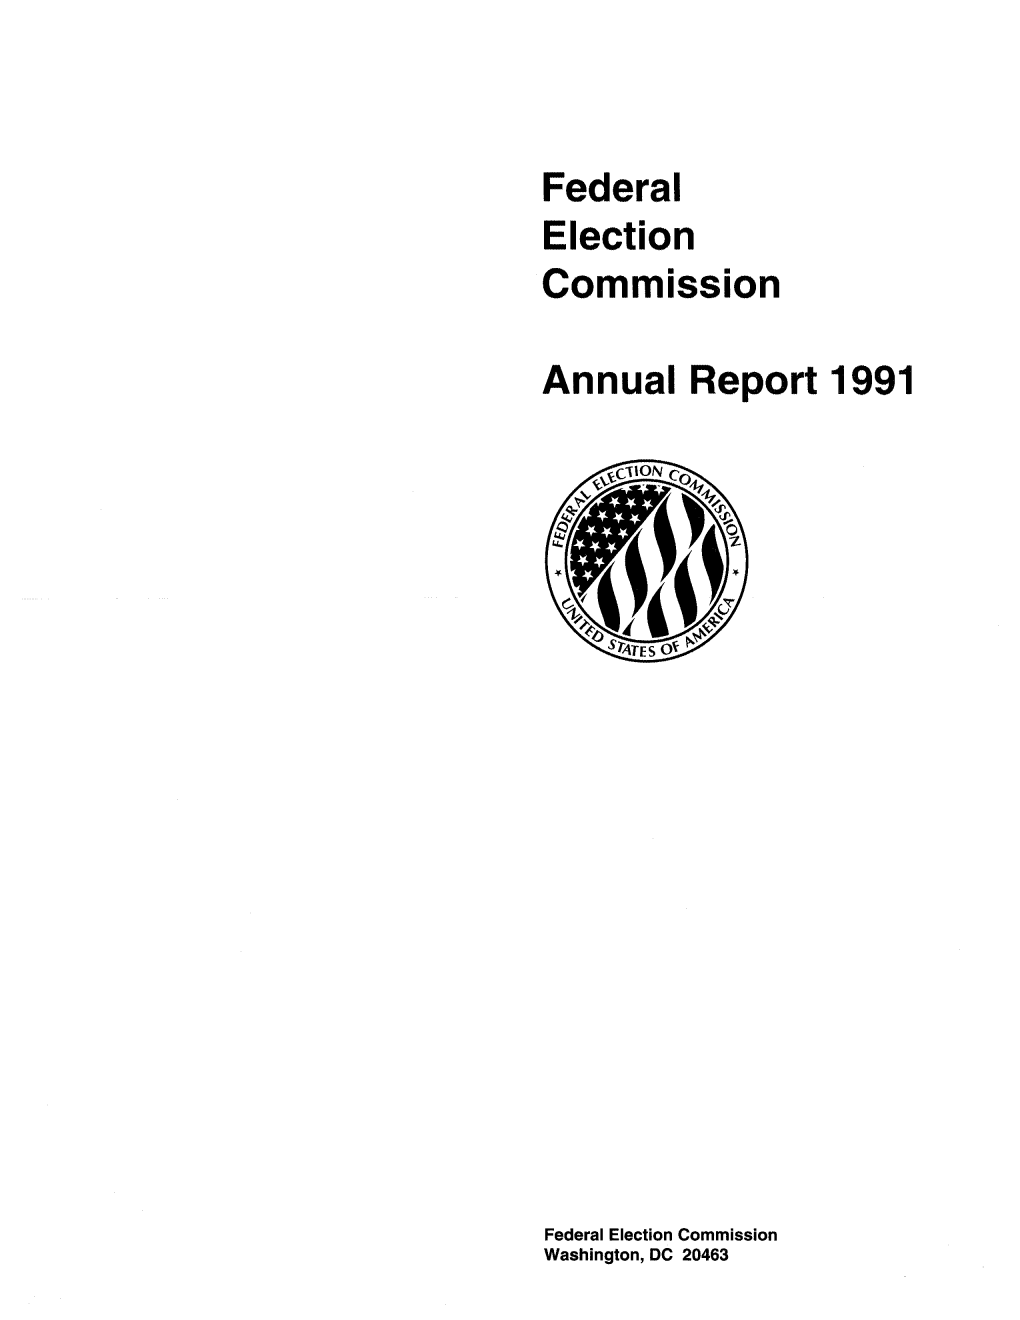 FEC Annual Report 1991